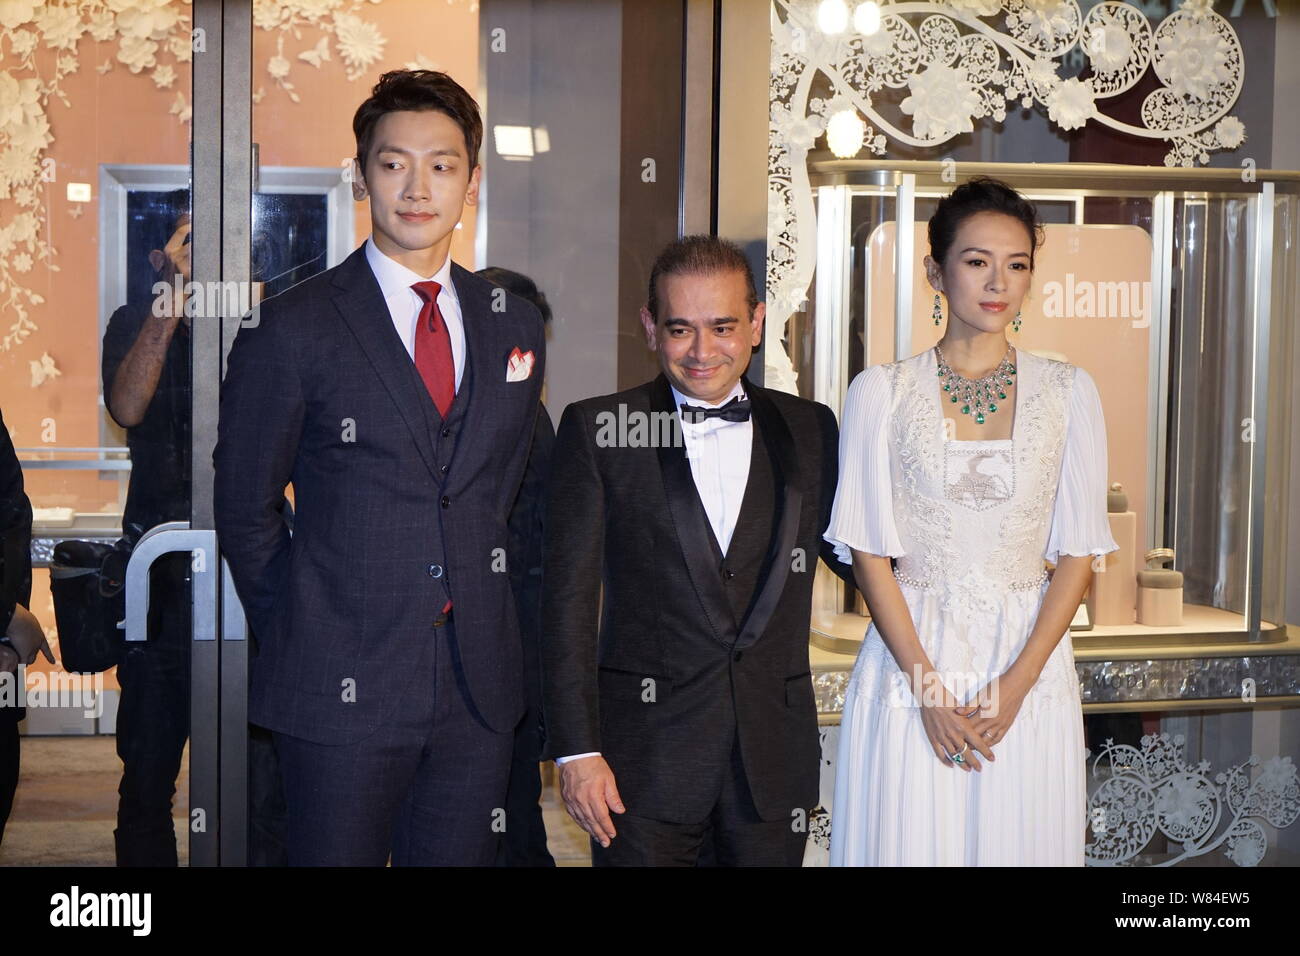 (Von links) Koreanische Sänger und Schauspieler Jung Ji-hoon, besser bekannt unter seinem Künstlernamen Regen bekannt, Diamant Schmuck Designer Nirav Modi und chinesische Schauspielerin Stockfoto